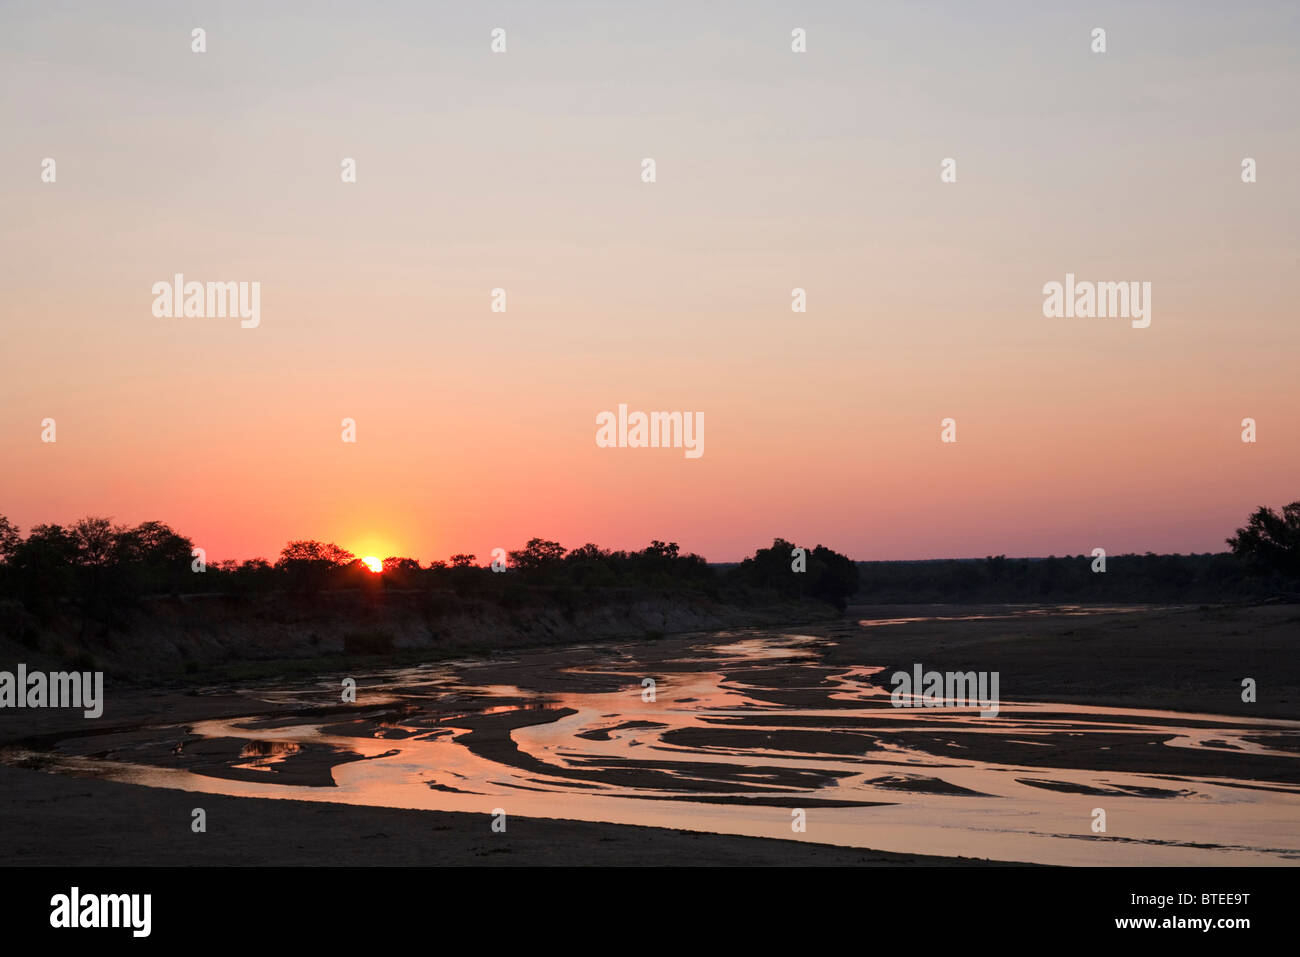 The Mwenezi riverbed at sunset Stock Photo